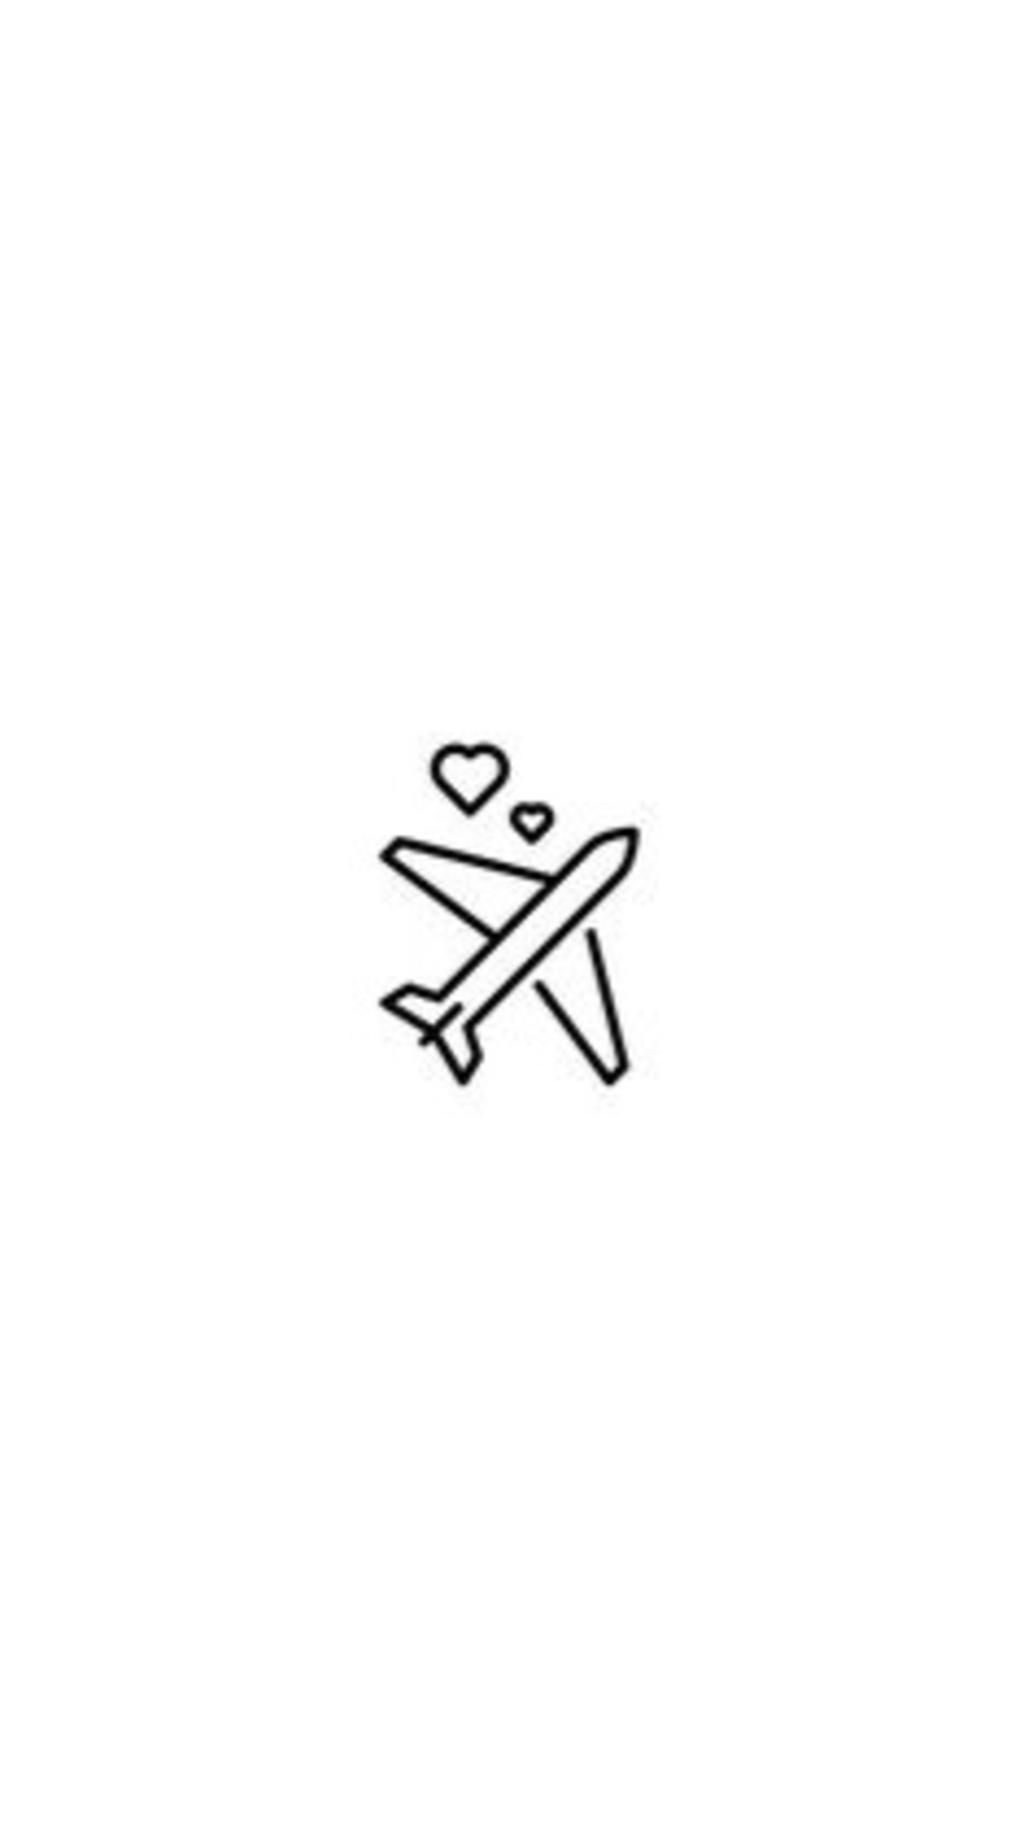 Máy bay viền trắng nền đen là biểu tượng của sự tự do và phiêu lưu. Hãy xem hình ảnh này để cảm nhận được một chút thăng hoa và sự náo nhiệt của những chuyến bay đầy thú vị.